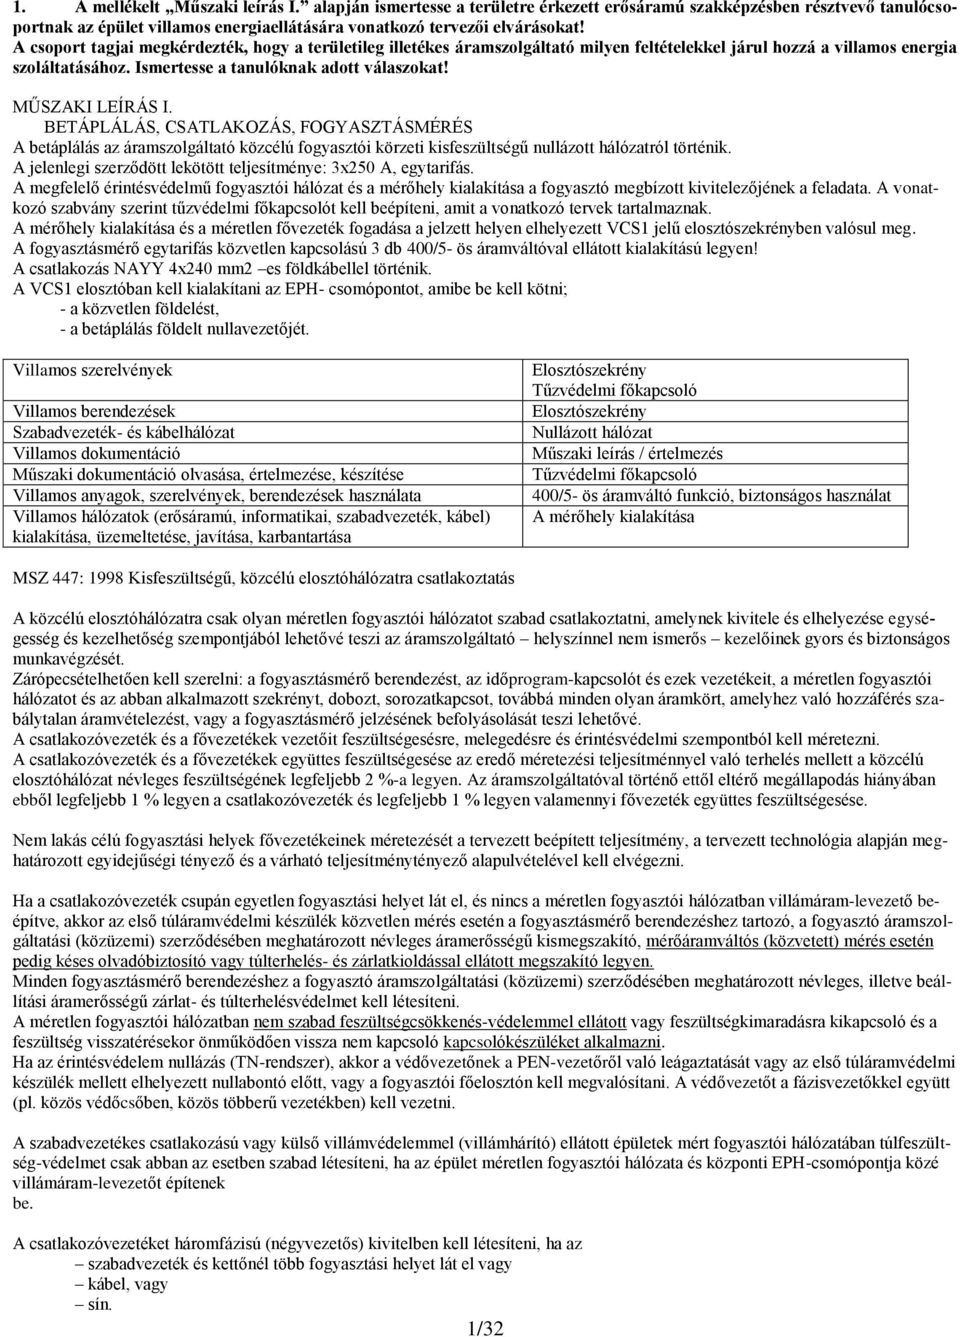 Tűzvédelmi főkapcsoló. Műszaki dokumentáció olvasása, értelmezése,  készítése - PDF Ingyenes letöltés